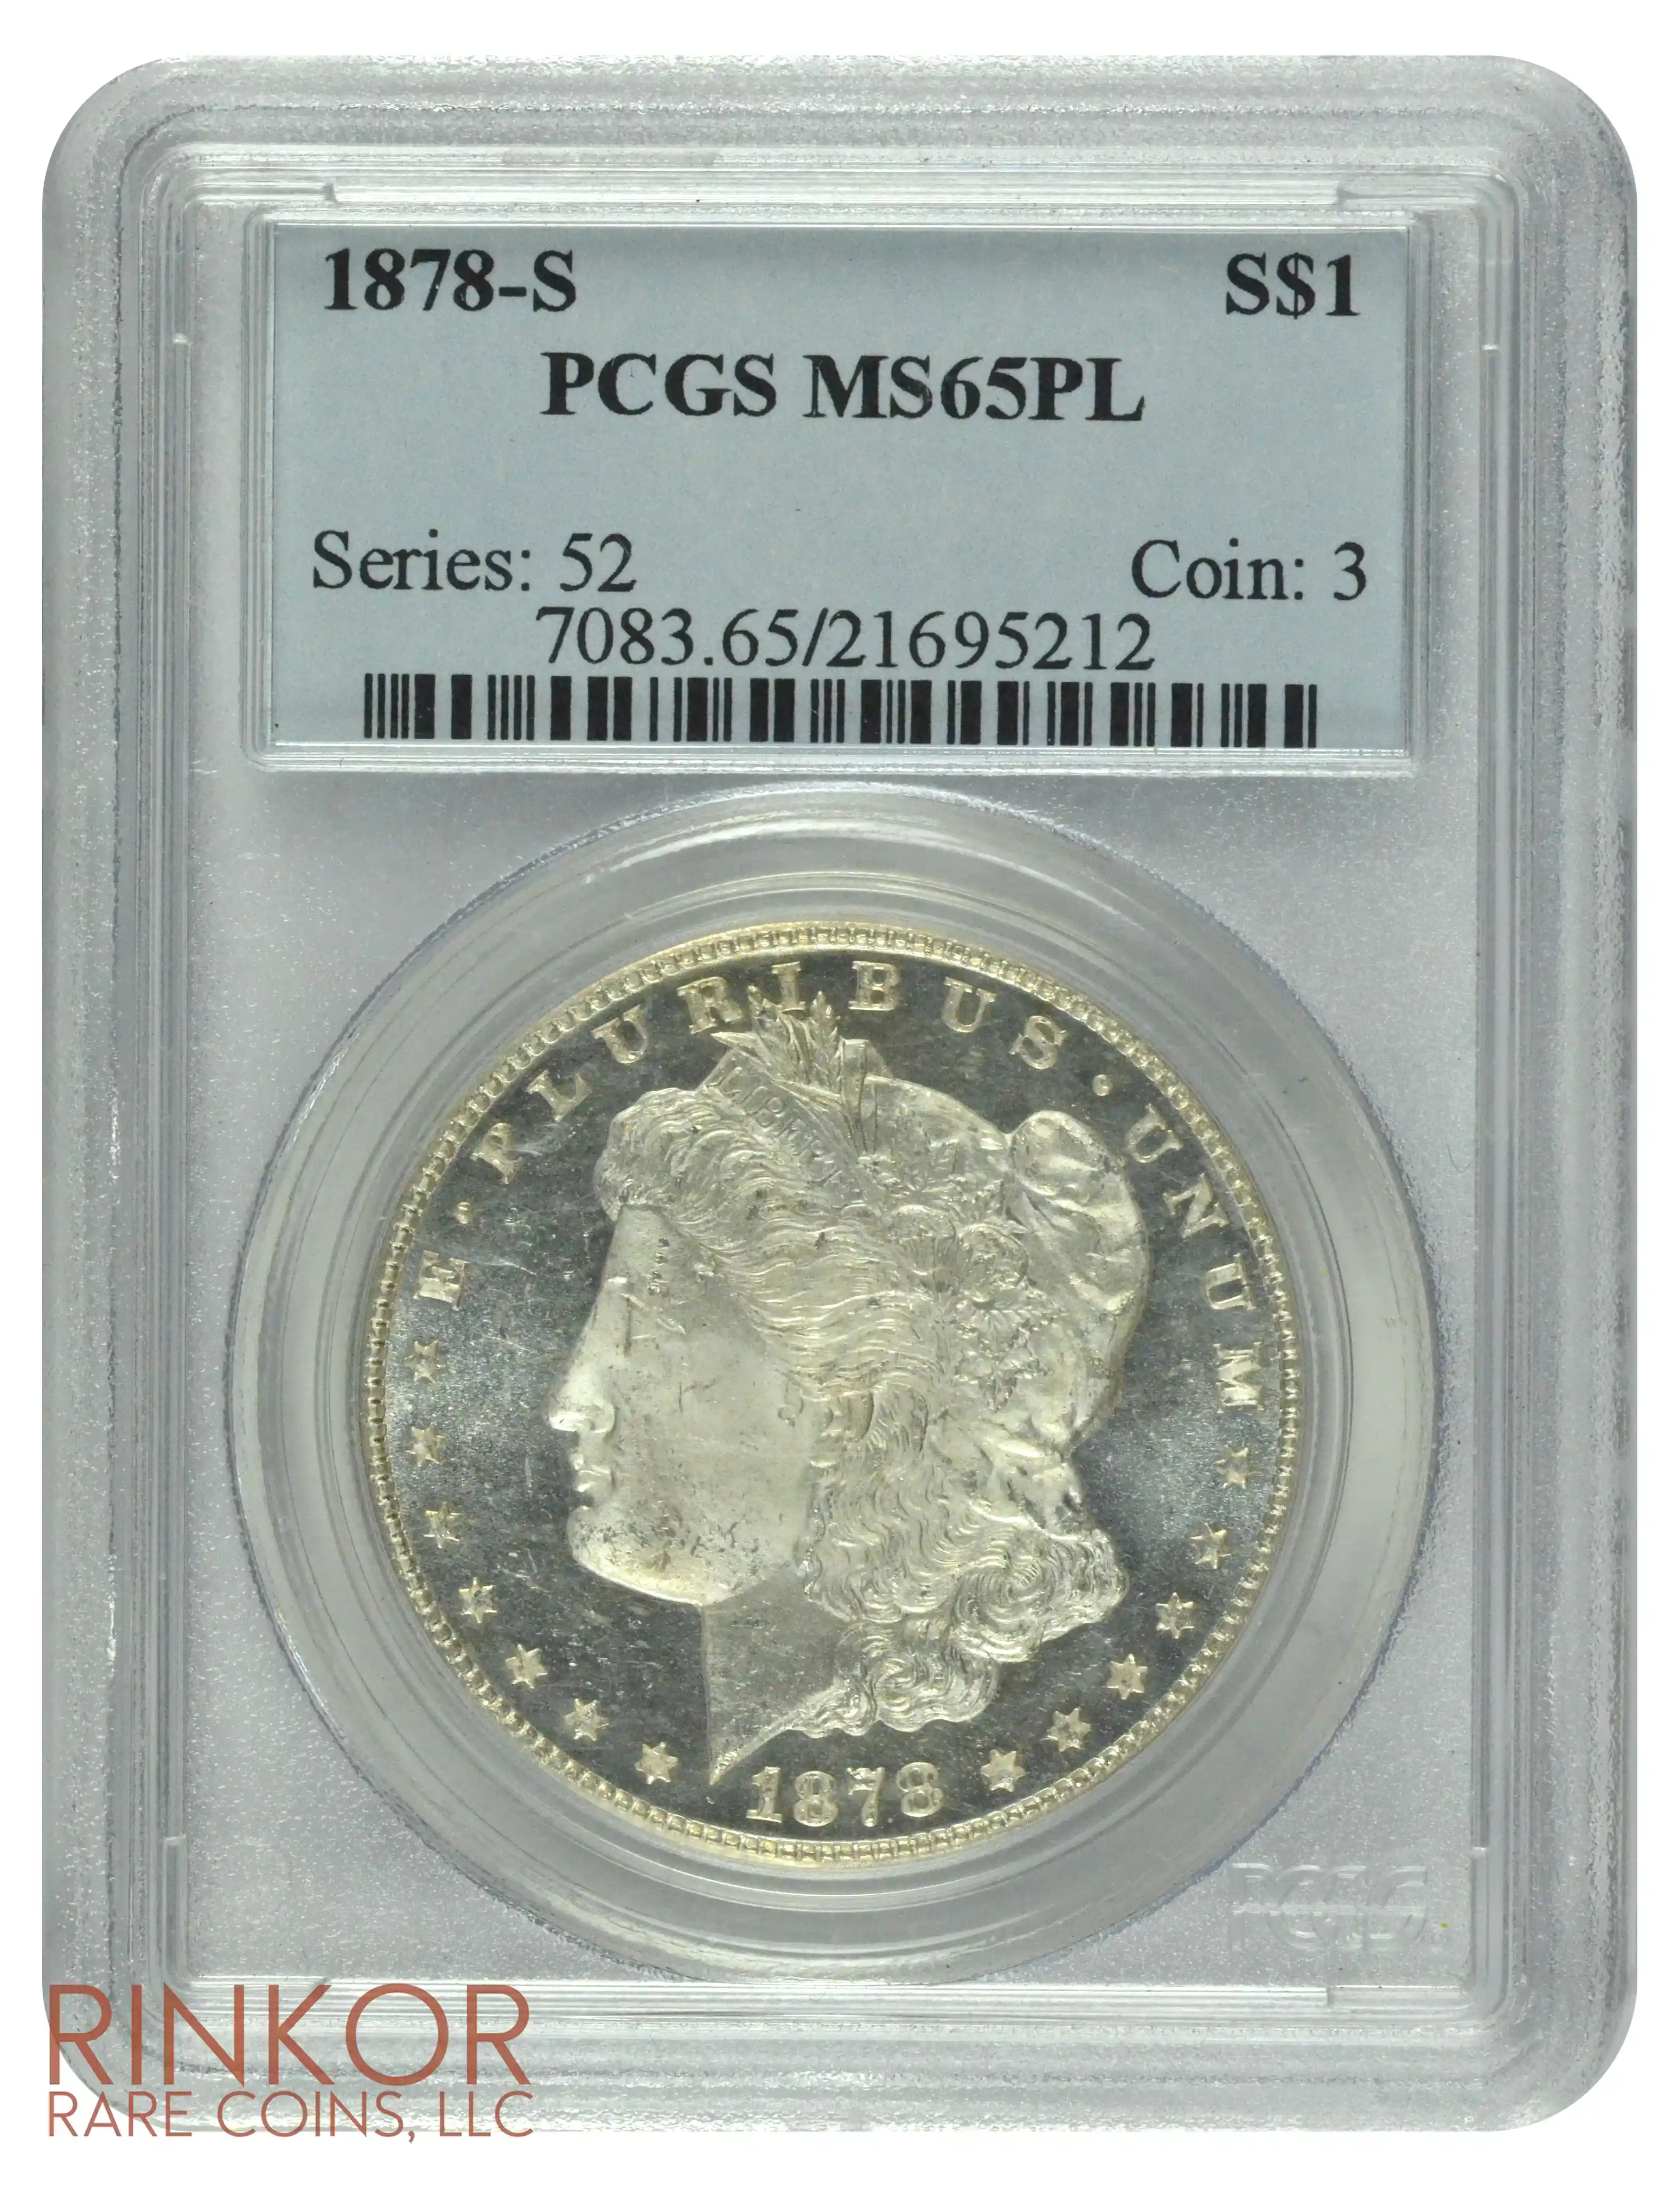 1878-S $1 PCGS MS 65 PL